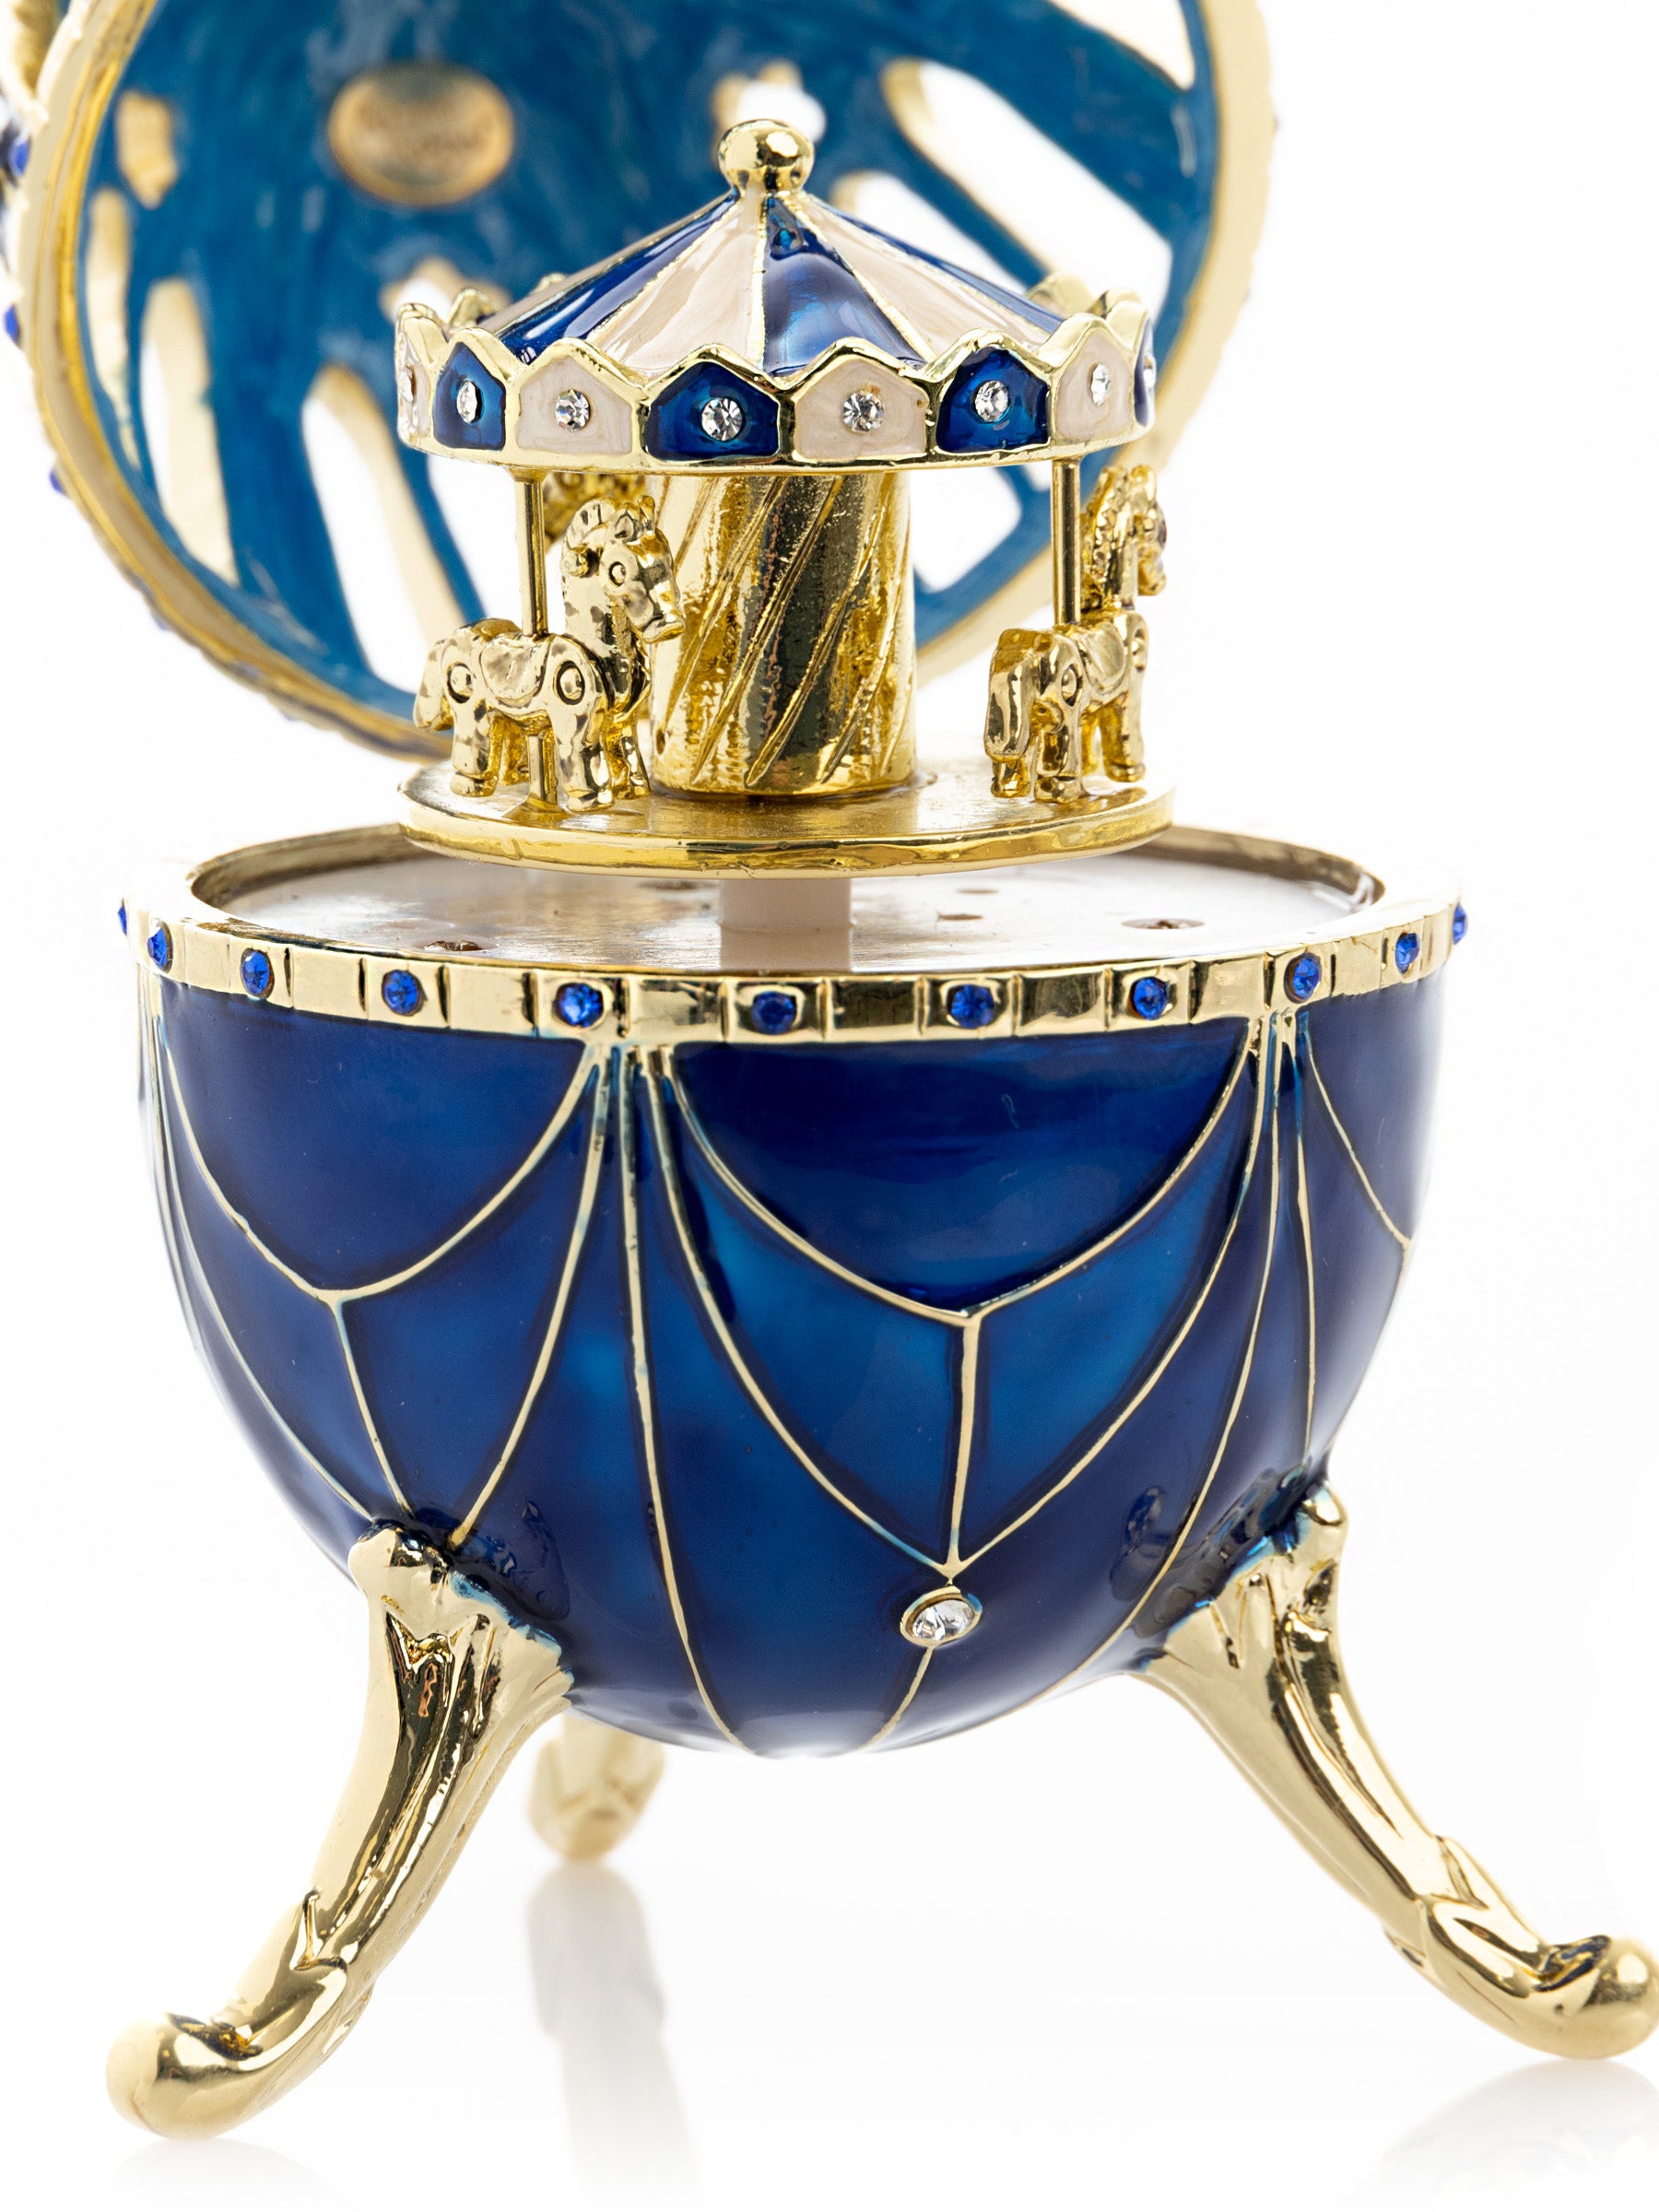 Oeuf Fabergé bleu et or avec surprise de carrousel à chevaux à l'intérieur